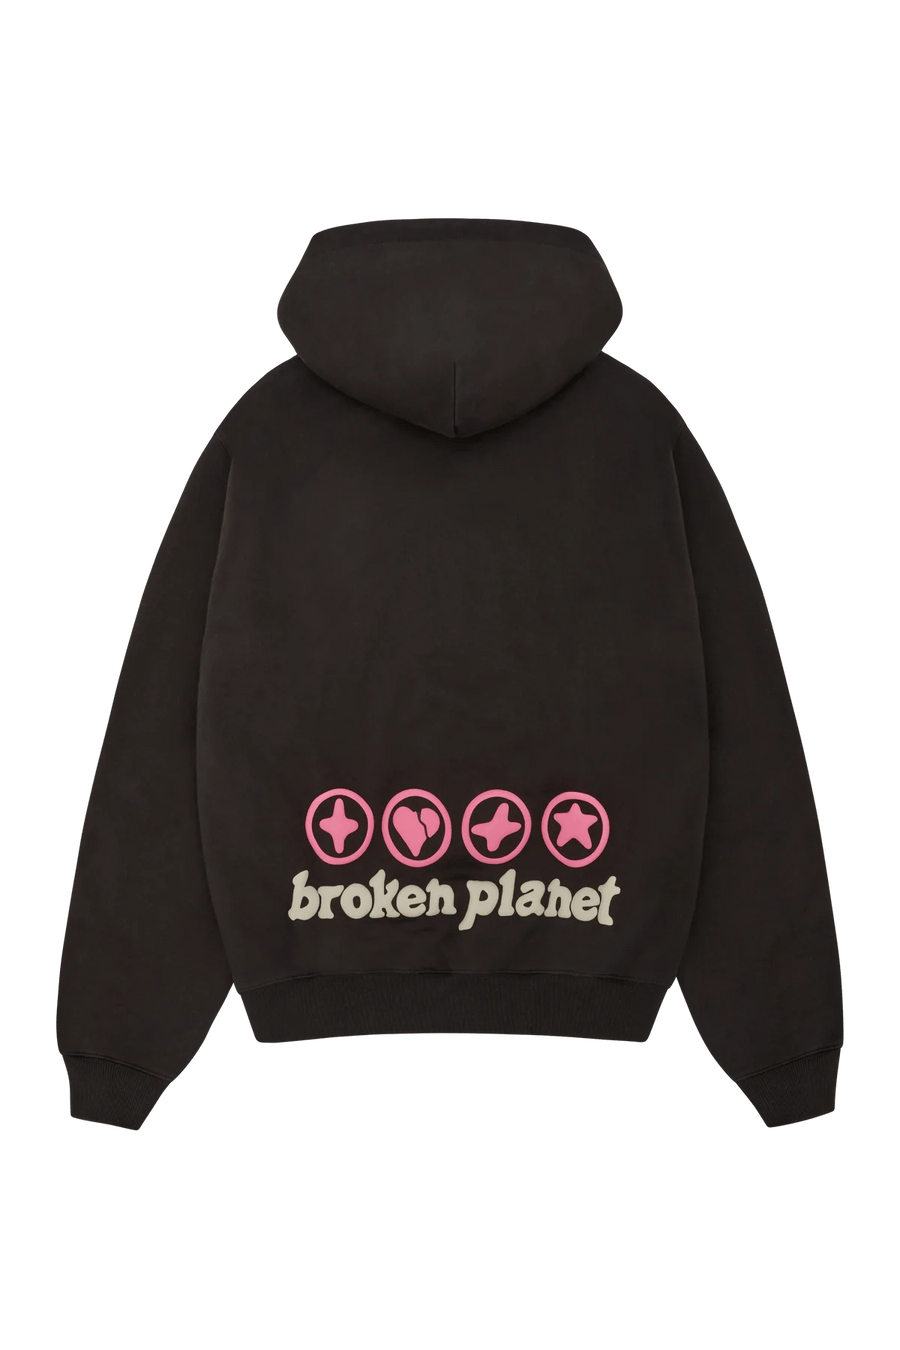 Broken Planet Market Hearts Are Made To Be Broken Hoodie - INSTAKICKSZ LTD